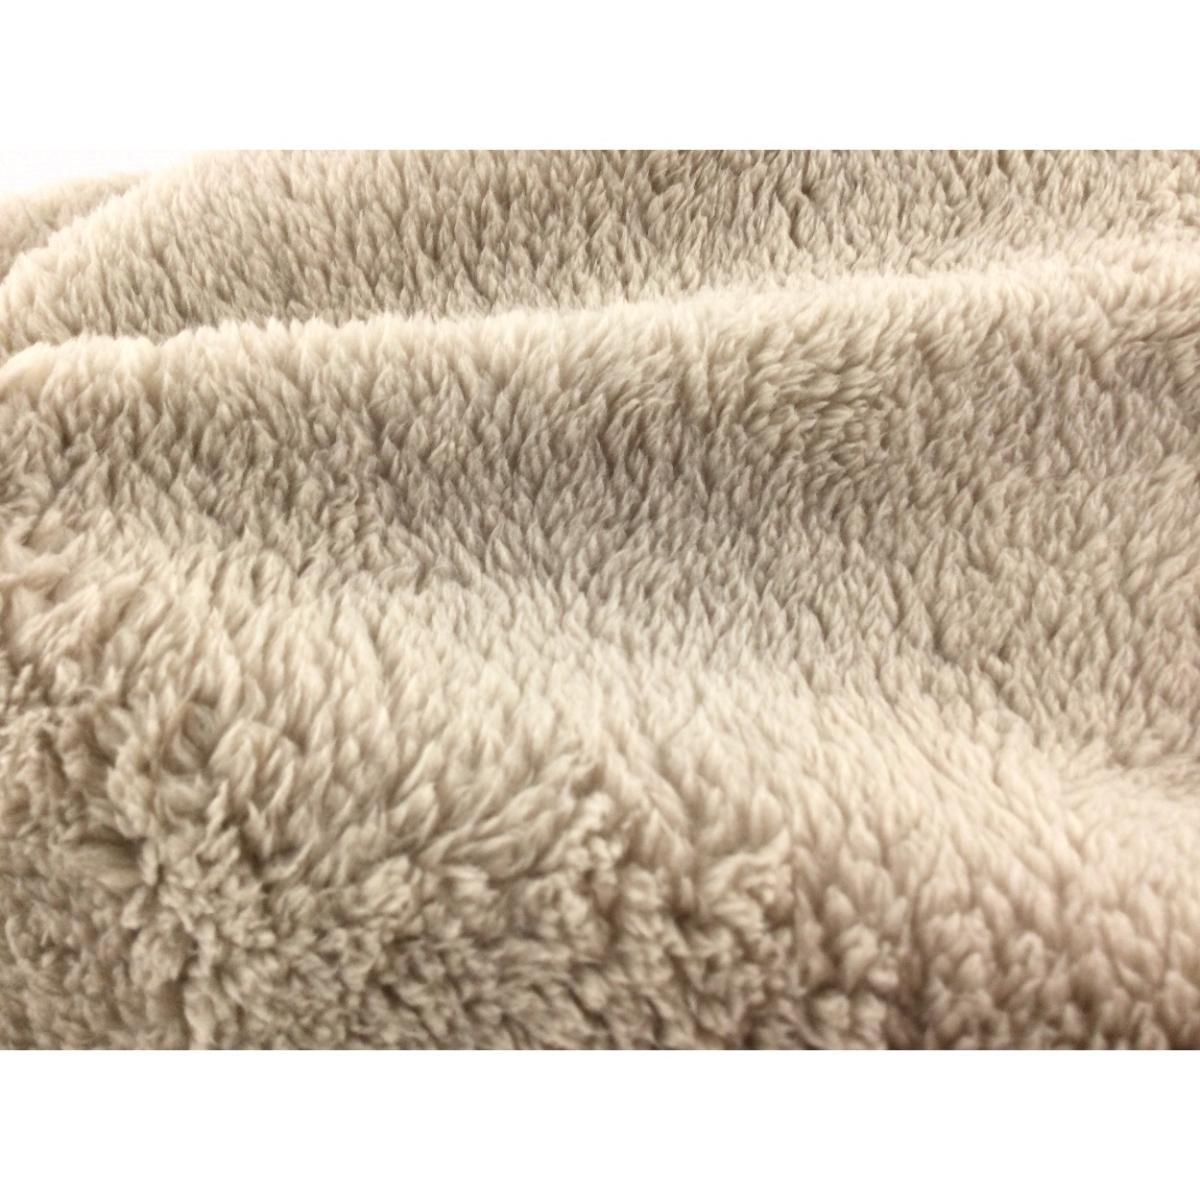  blanket microfibre material single width 140x210cm oak beige winter 